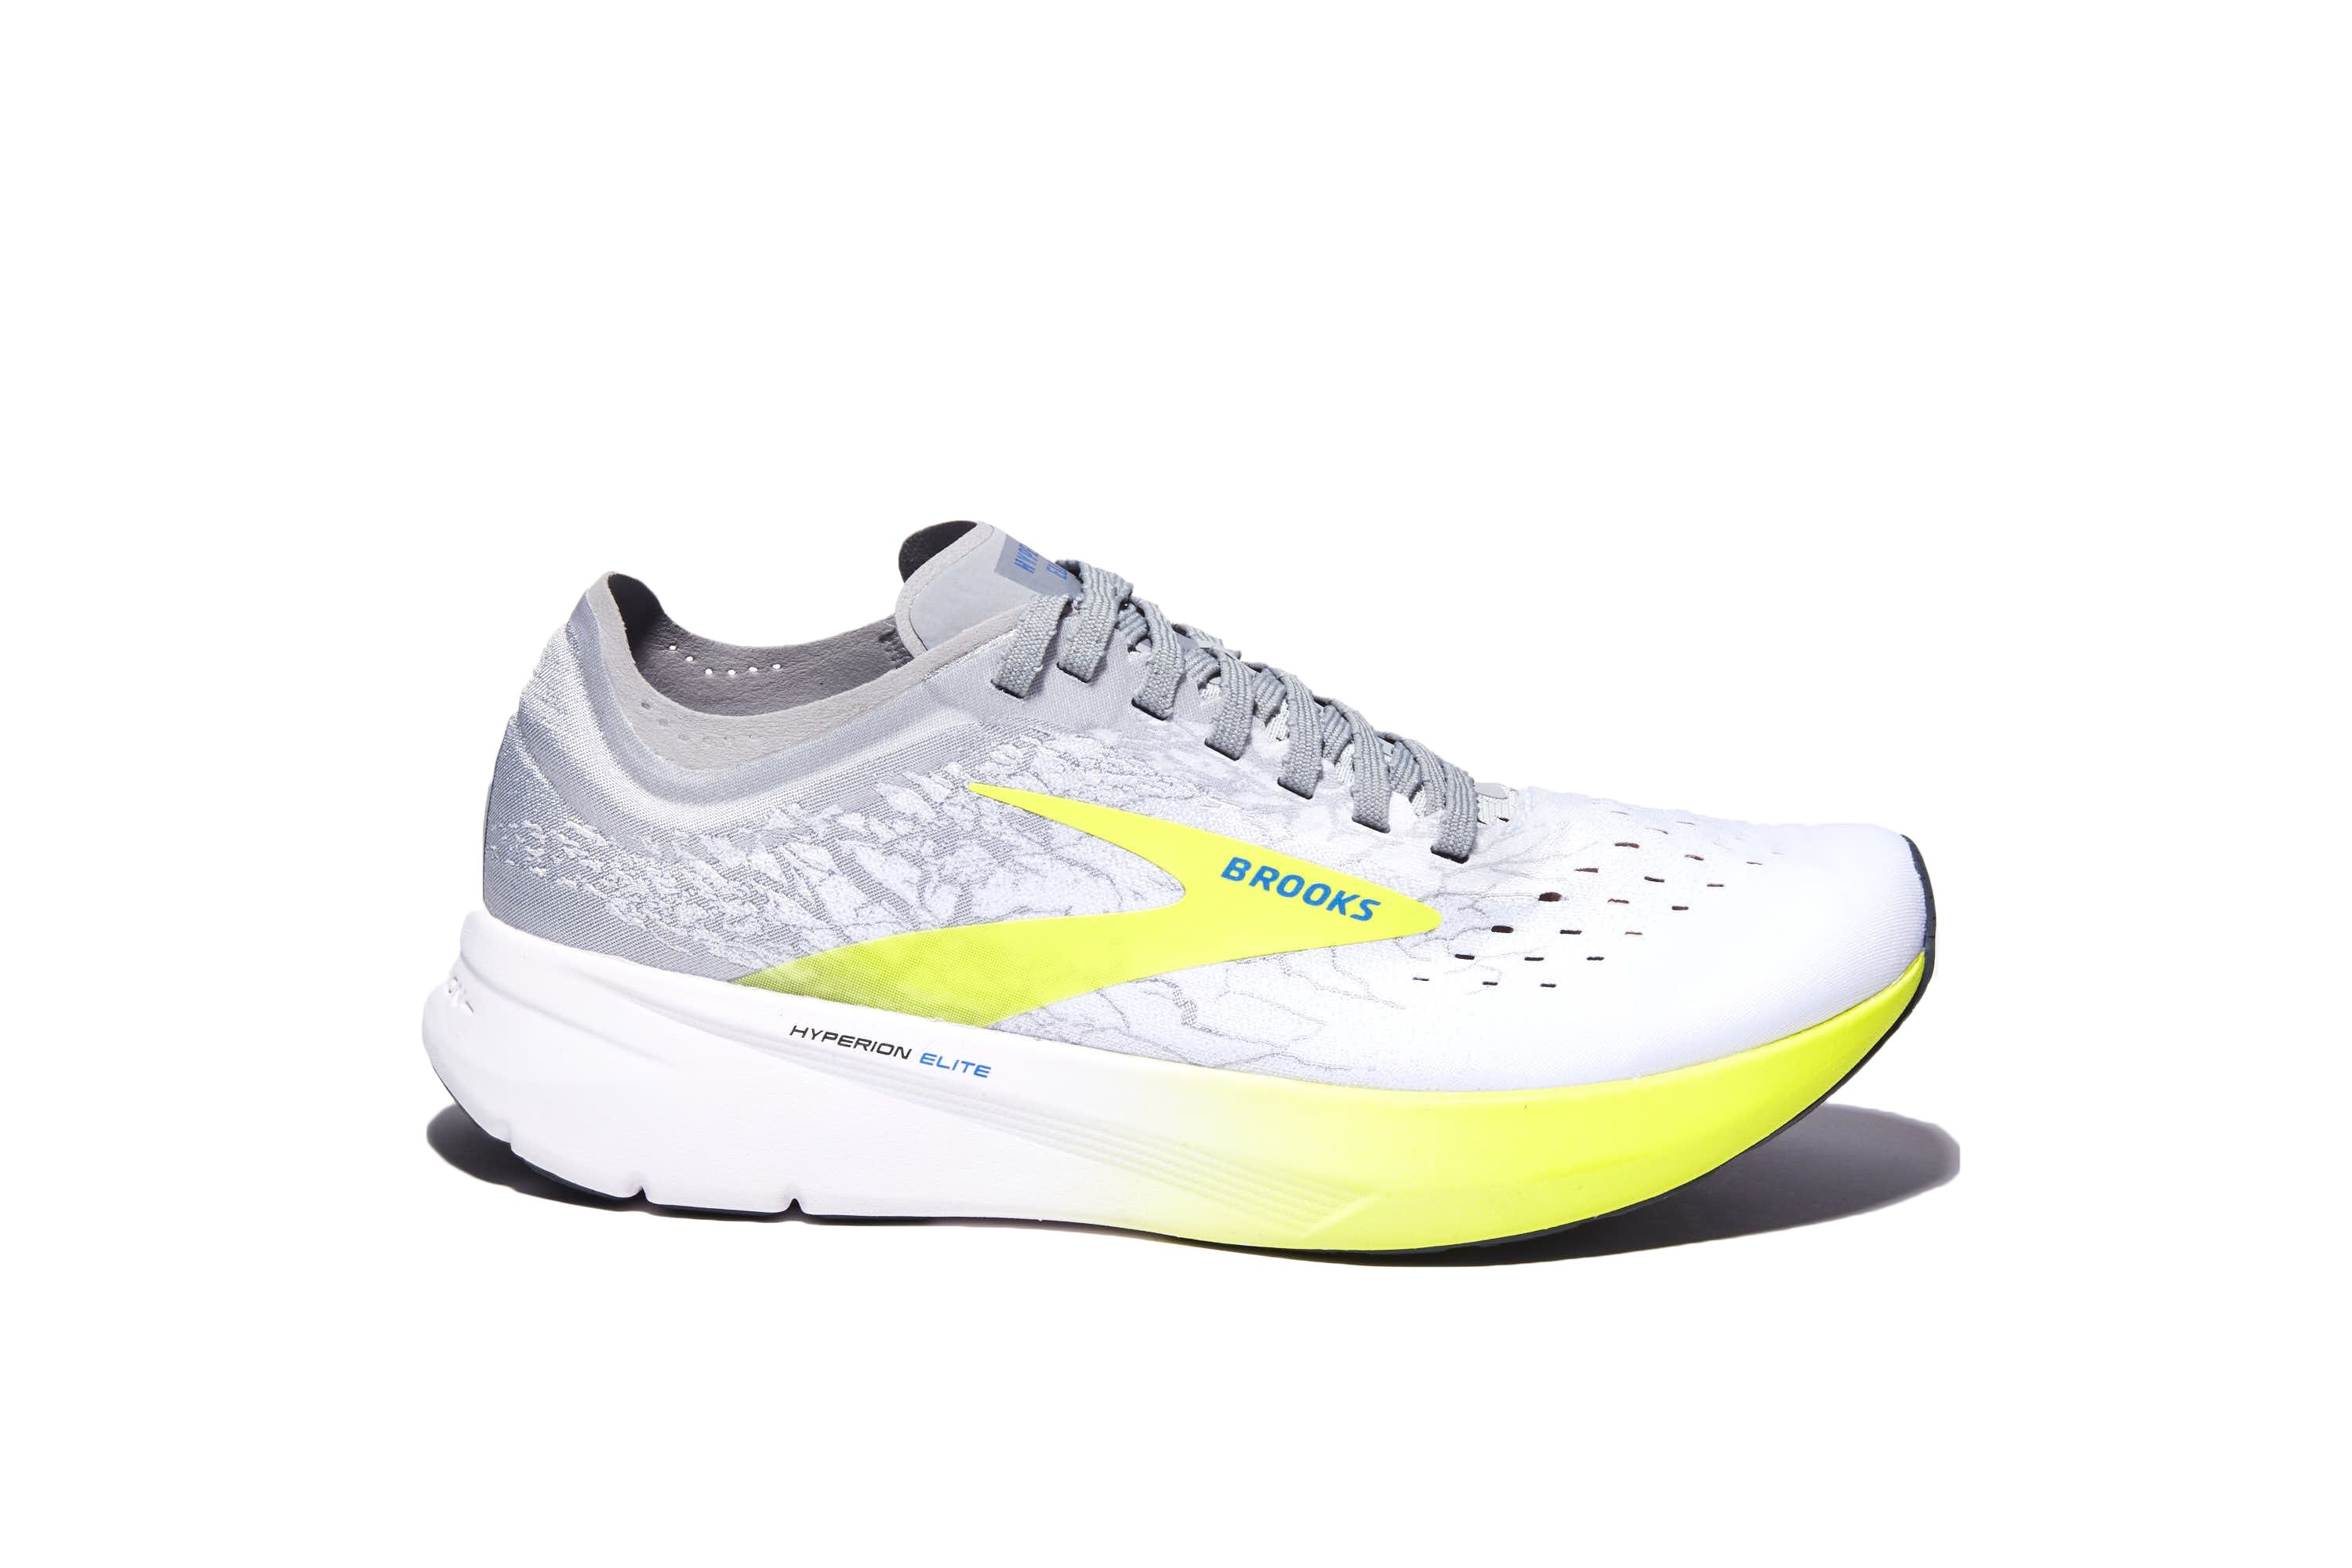 brooks neon yellow running shoes